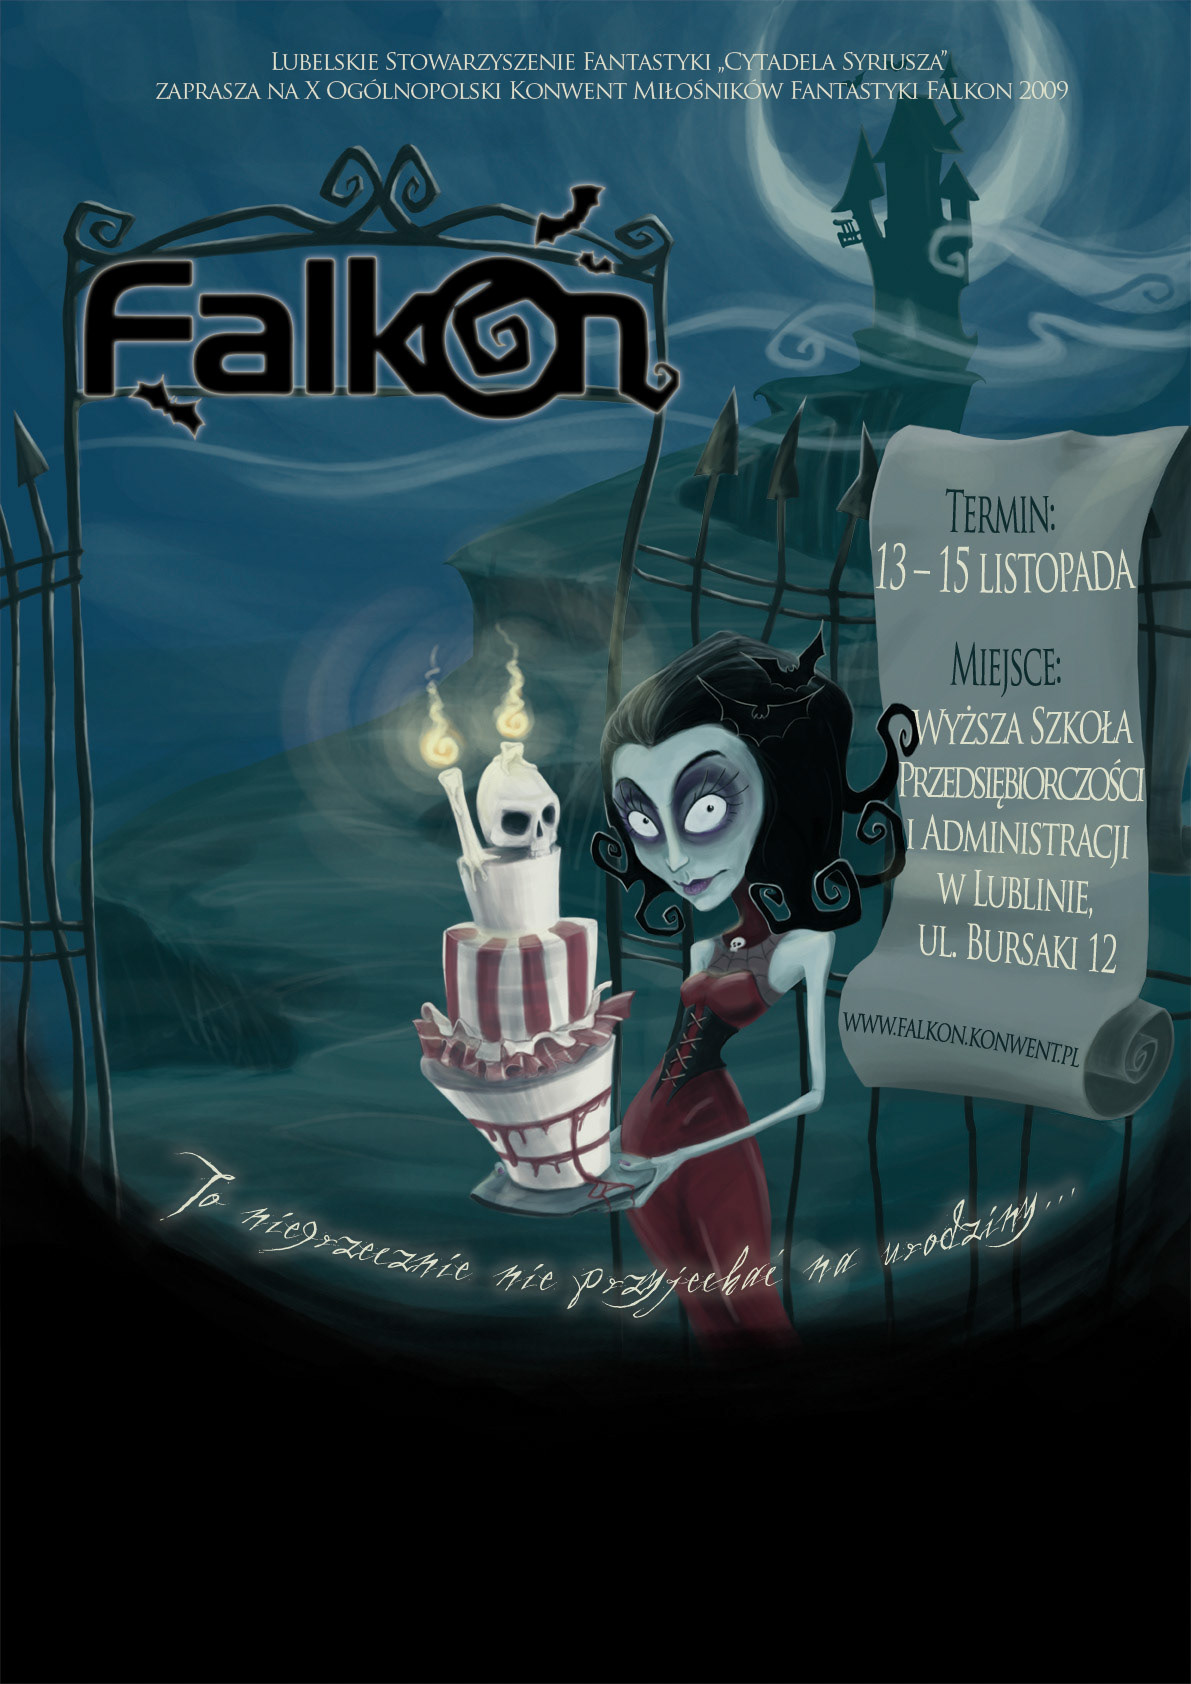 Falkon  fantasy  science fiction sci-fi poster creepy  dark cartoon cyber Birthday corpse  zombie